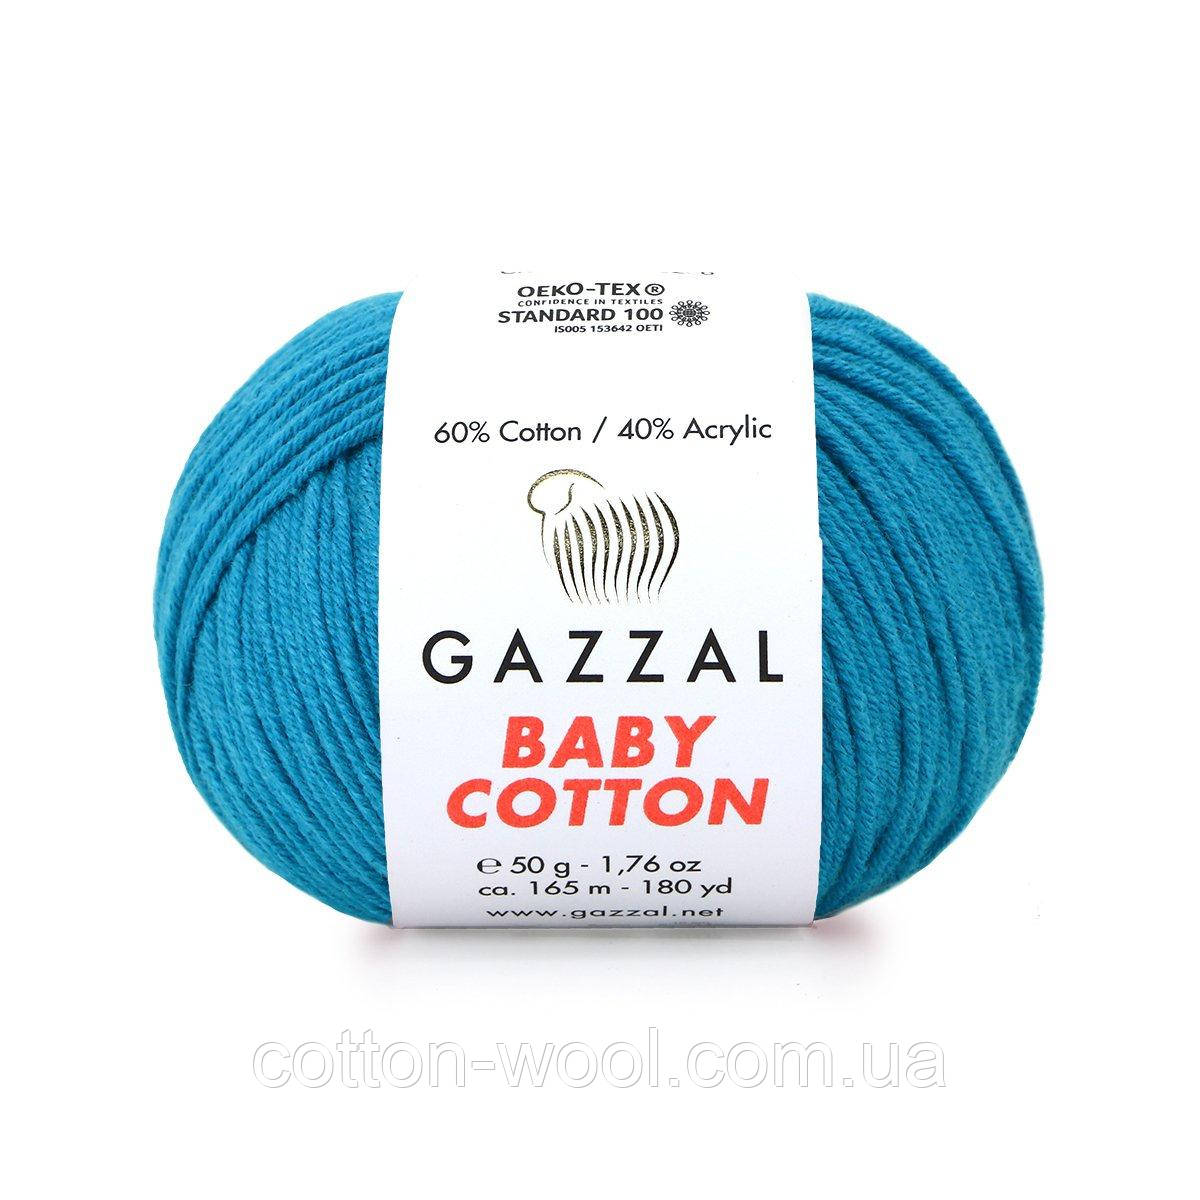 GAZZAL Baby Cotton (Бебі Коттон)3428 темна бірюза